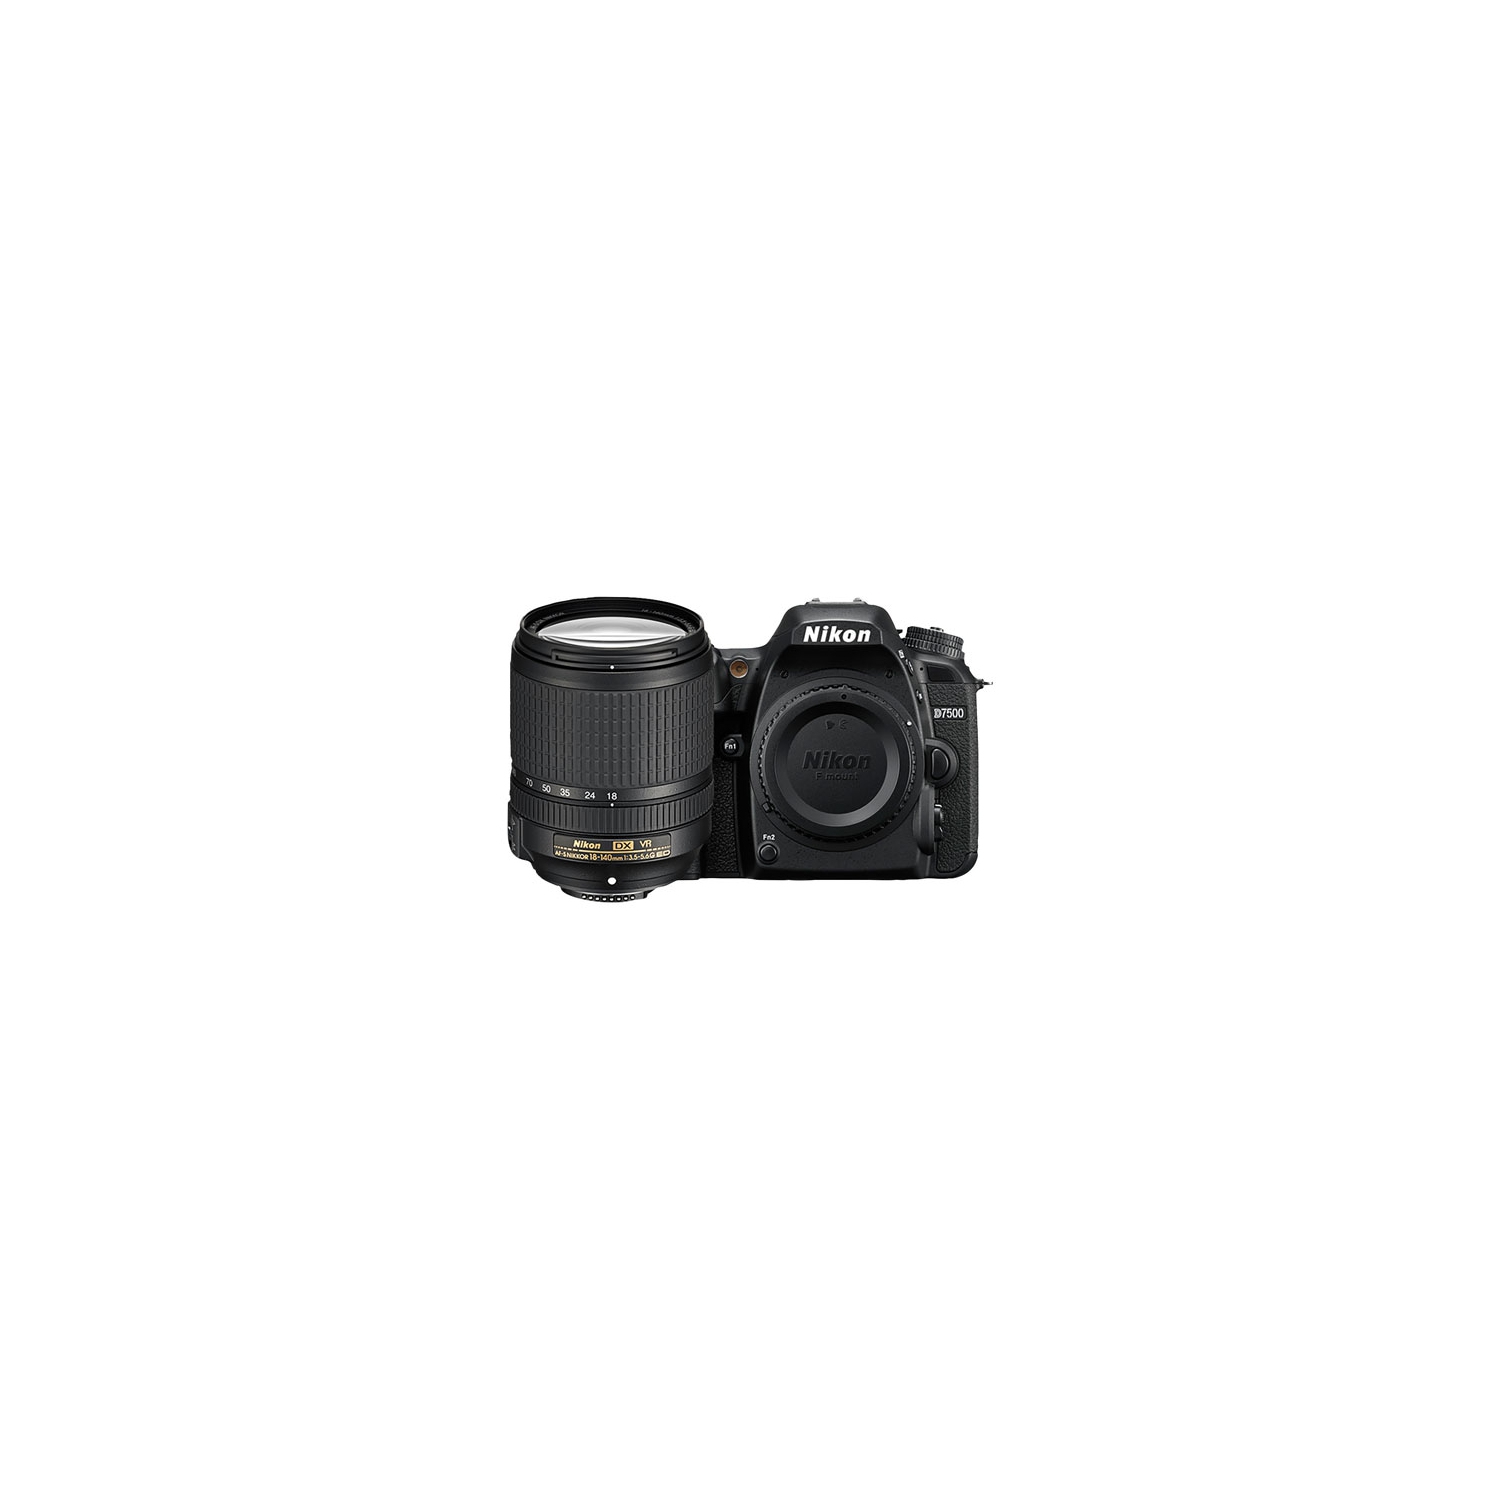 Refurbished (Excellent) - NIKON D7500 DSLR Camera with 18-140mm ED VR Lens Kit